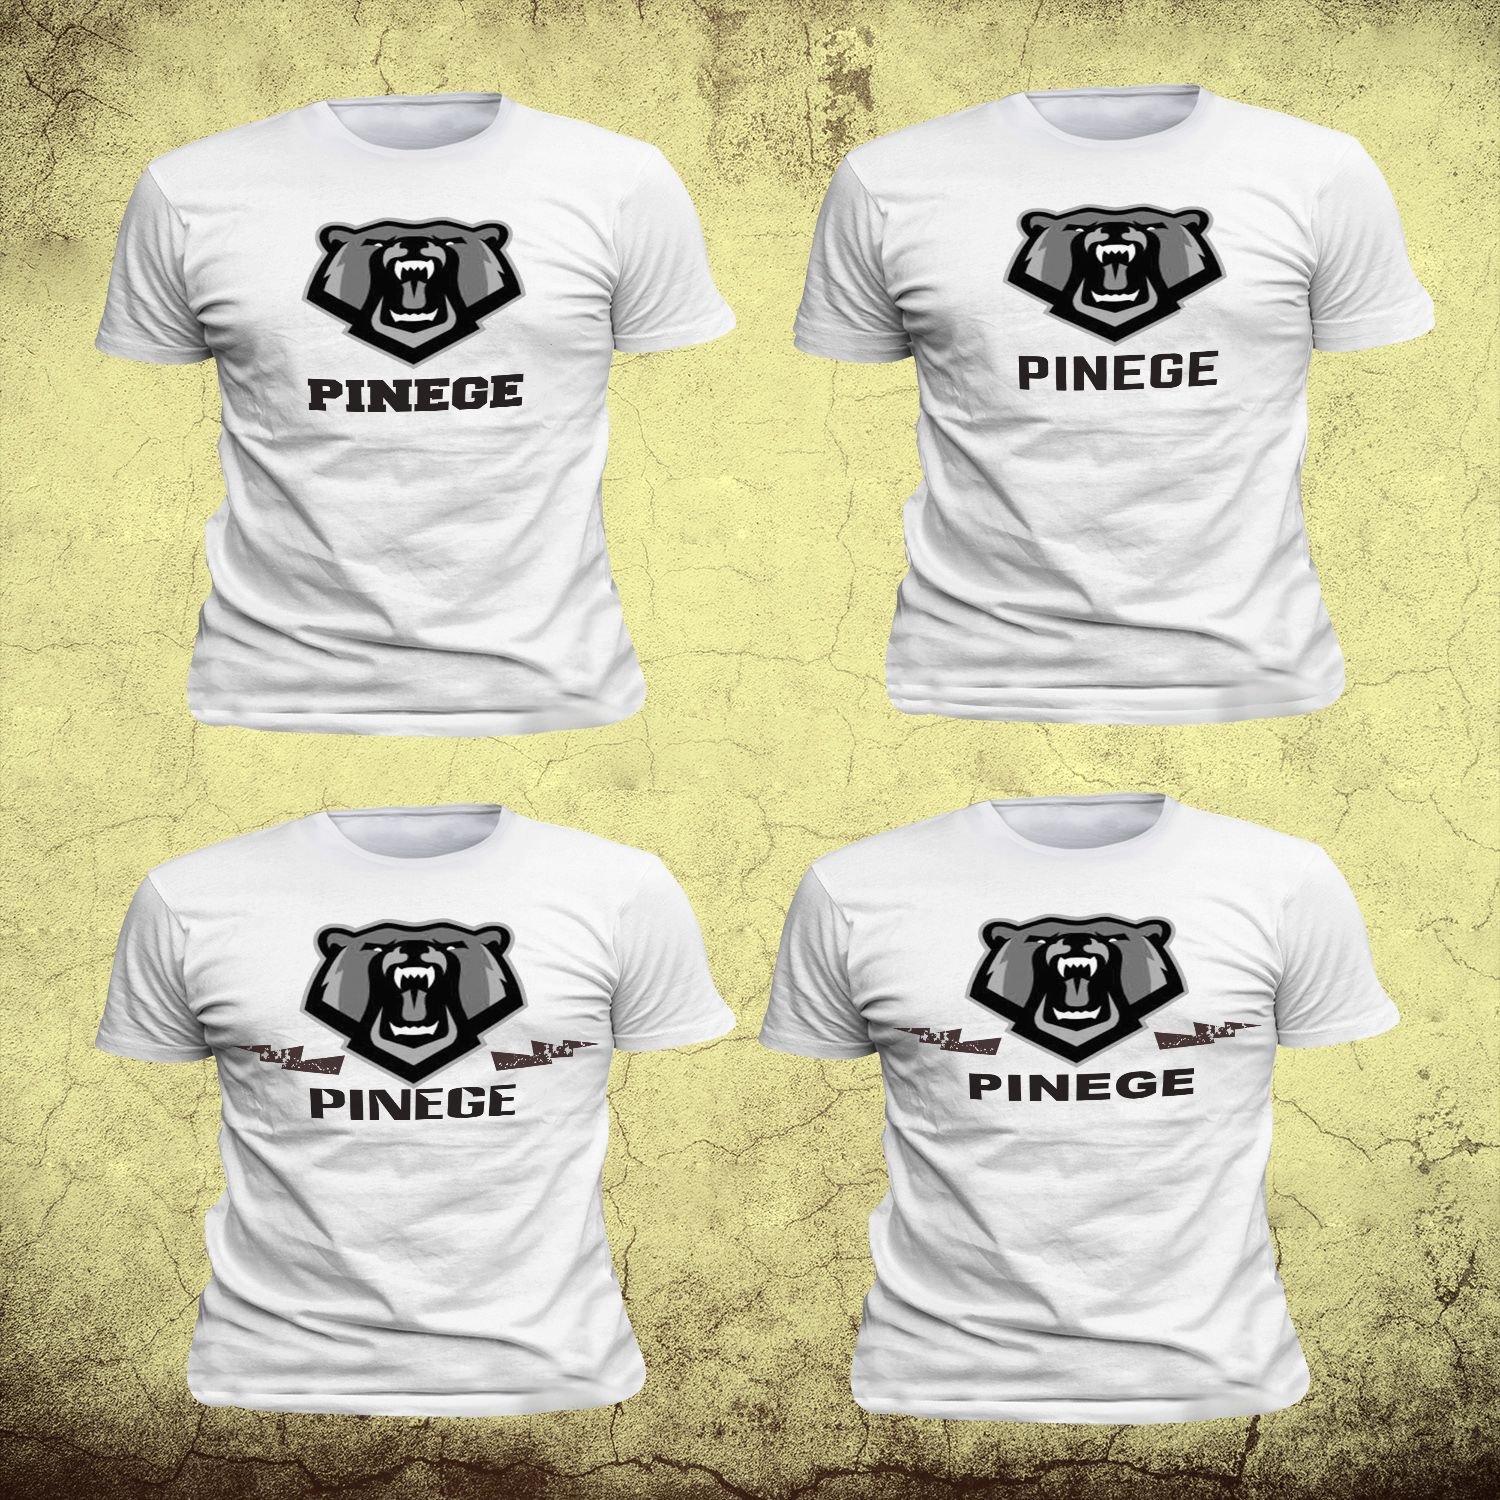 PINEGE - одежда для байкеров, спорта и патриотов - дизайнер Angeer